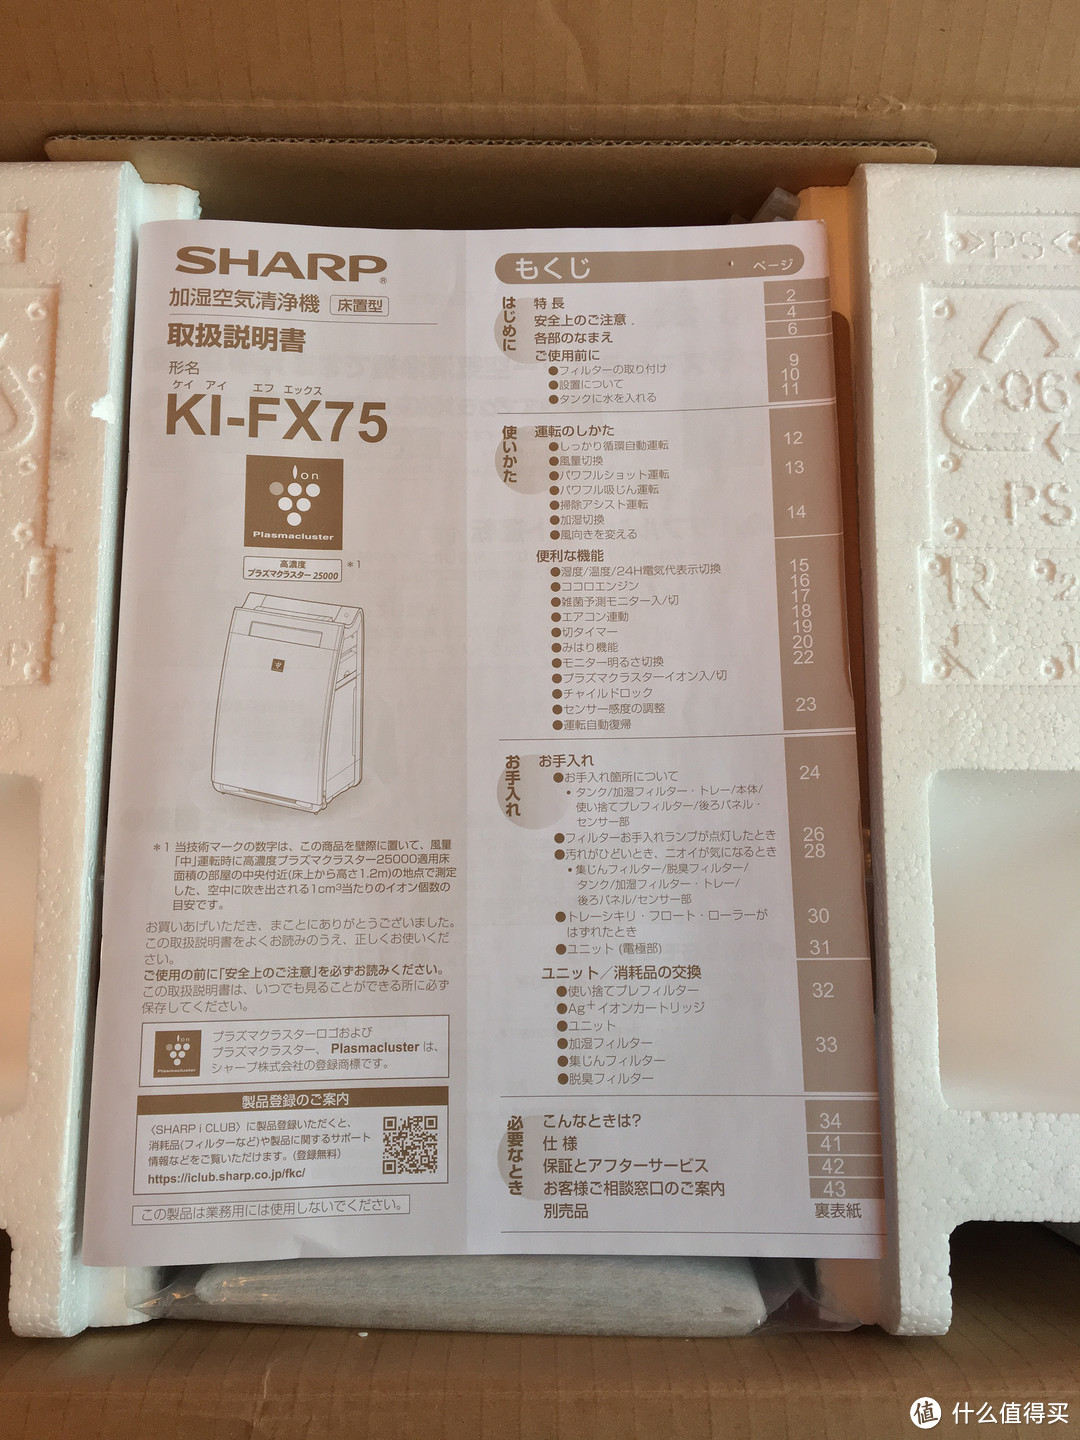 日亚购入SHARP 夏普 KI-FX75-W 空气净化器 纯开箱检视